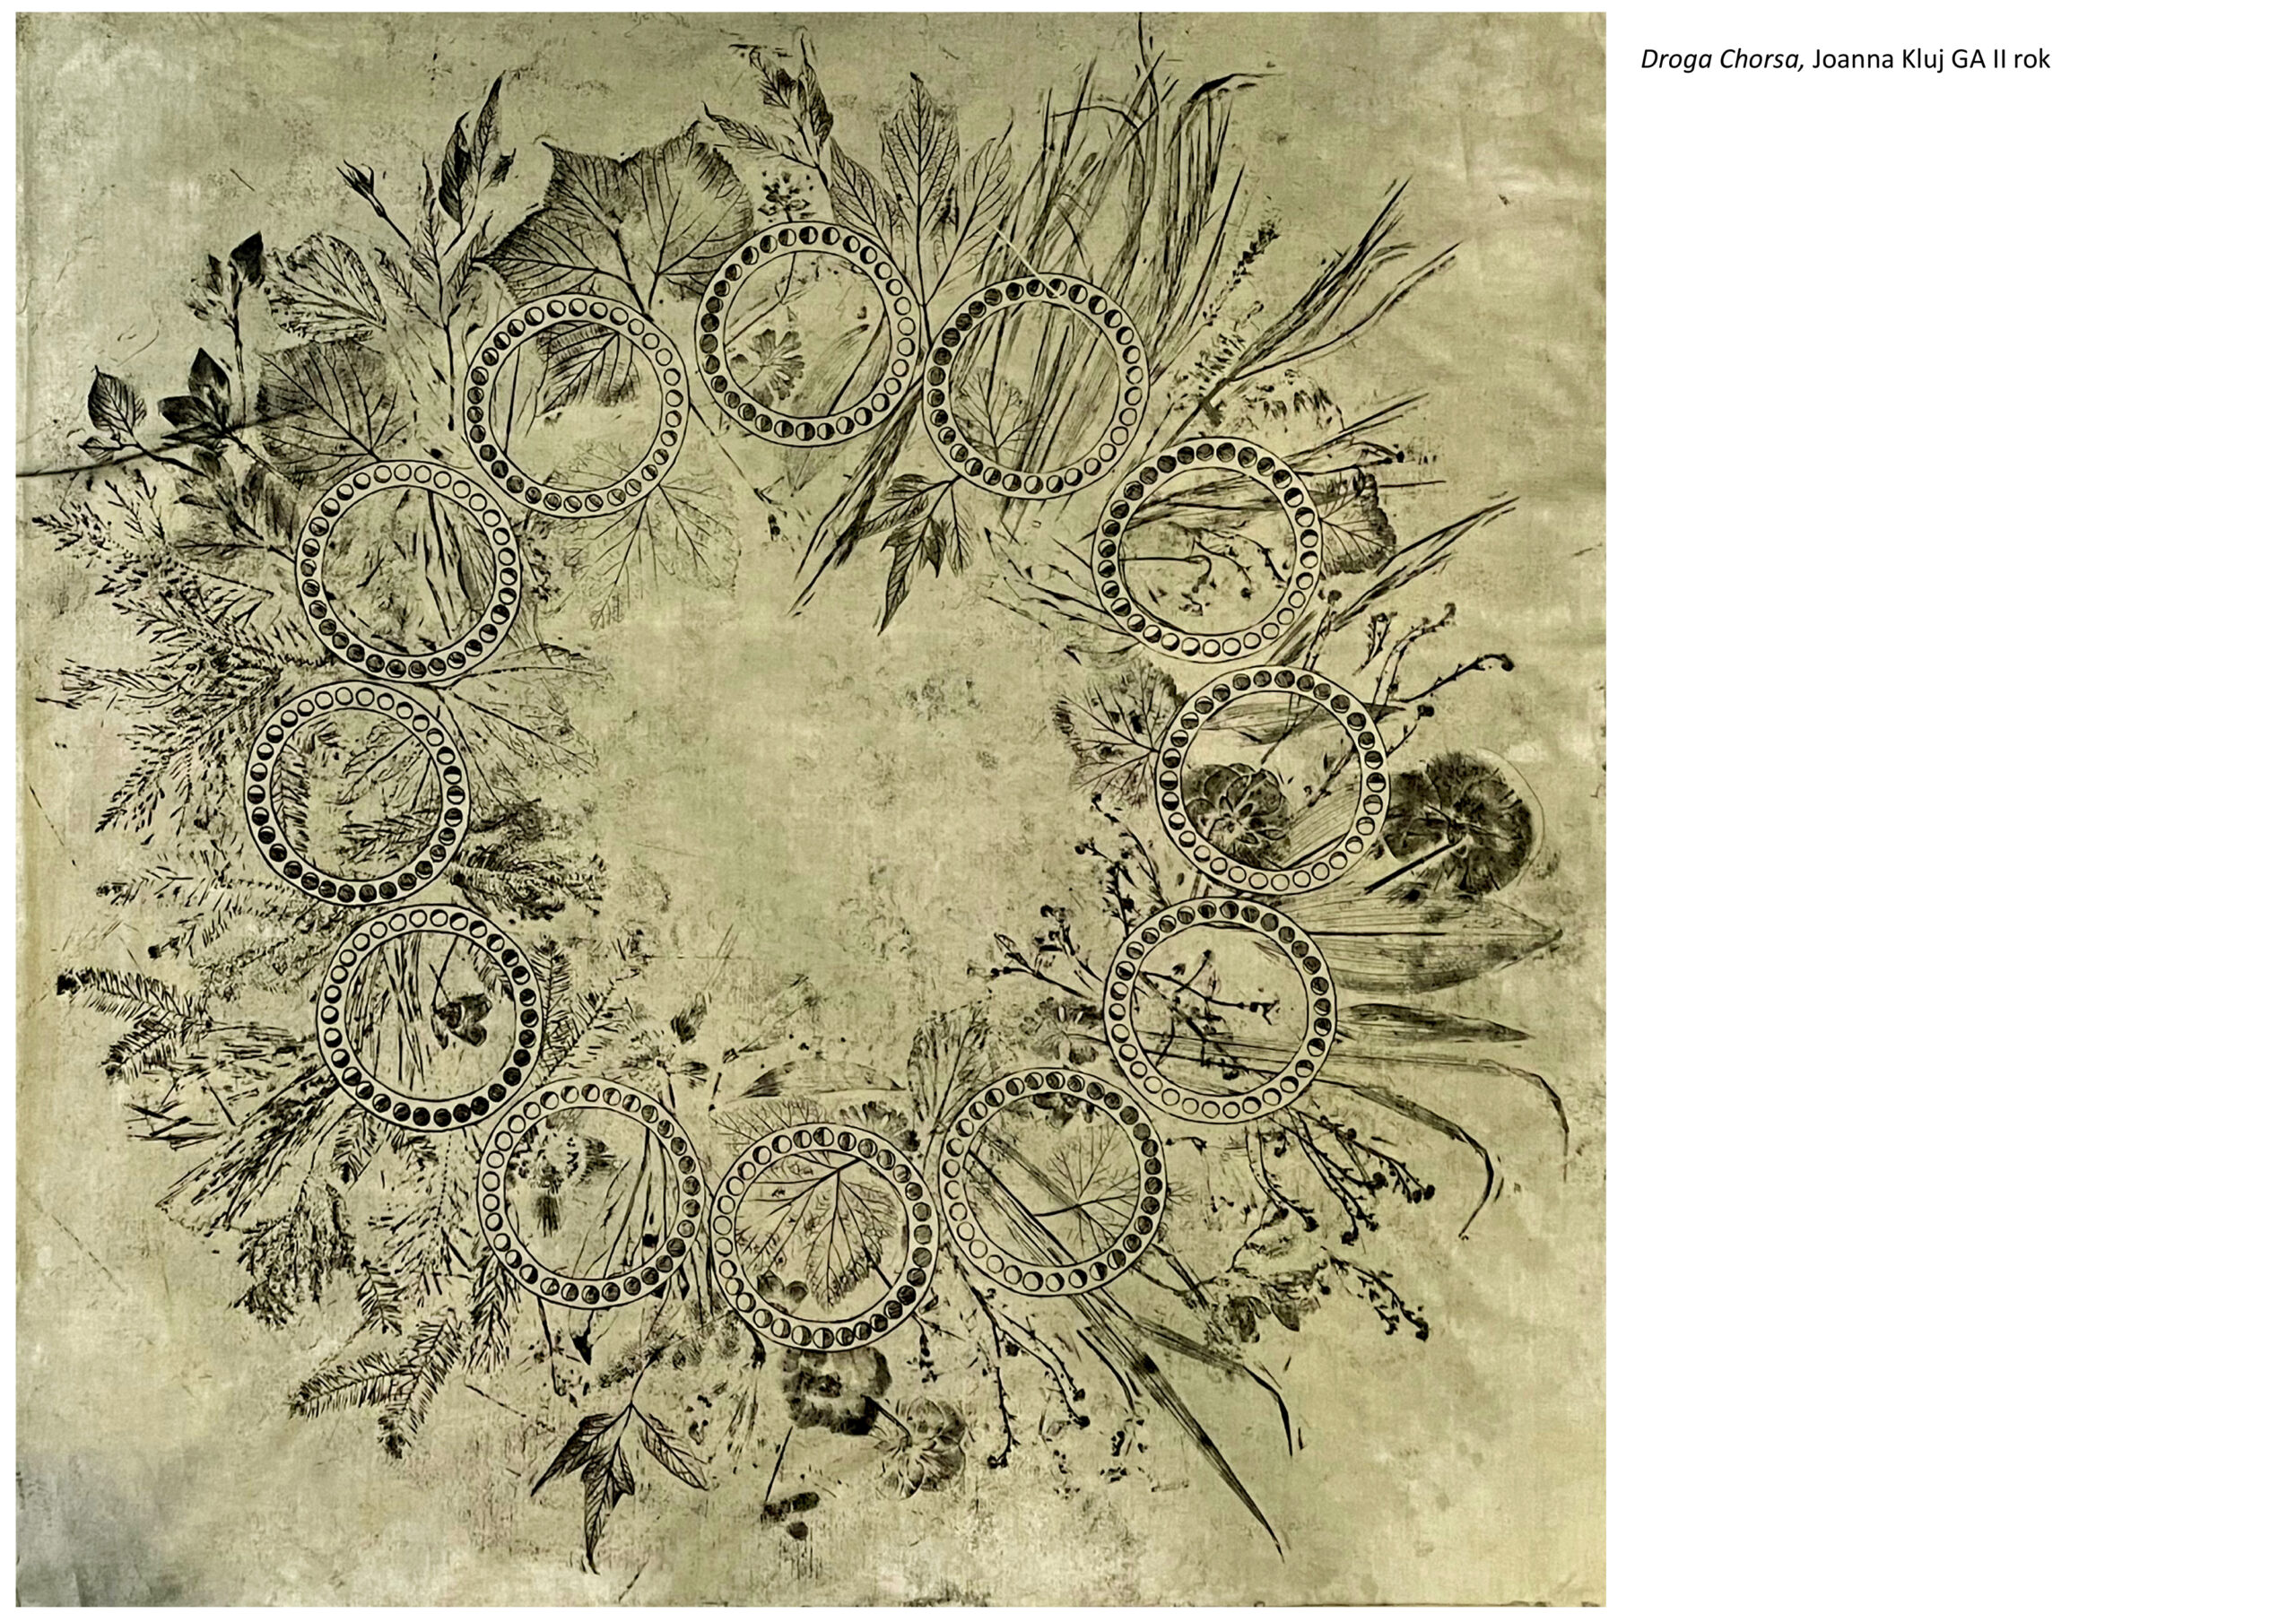  Tytuł: Droga Chorsa. Autorka: Joanna Kluj. Kwadratowa grafika nadrukowana na zielonkawą tkaninę. Obraz przedstawia odbicia roślin oraz 12 okręgów z symbolami faz księżycowych. Wszystko w kompozycji koła. 